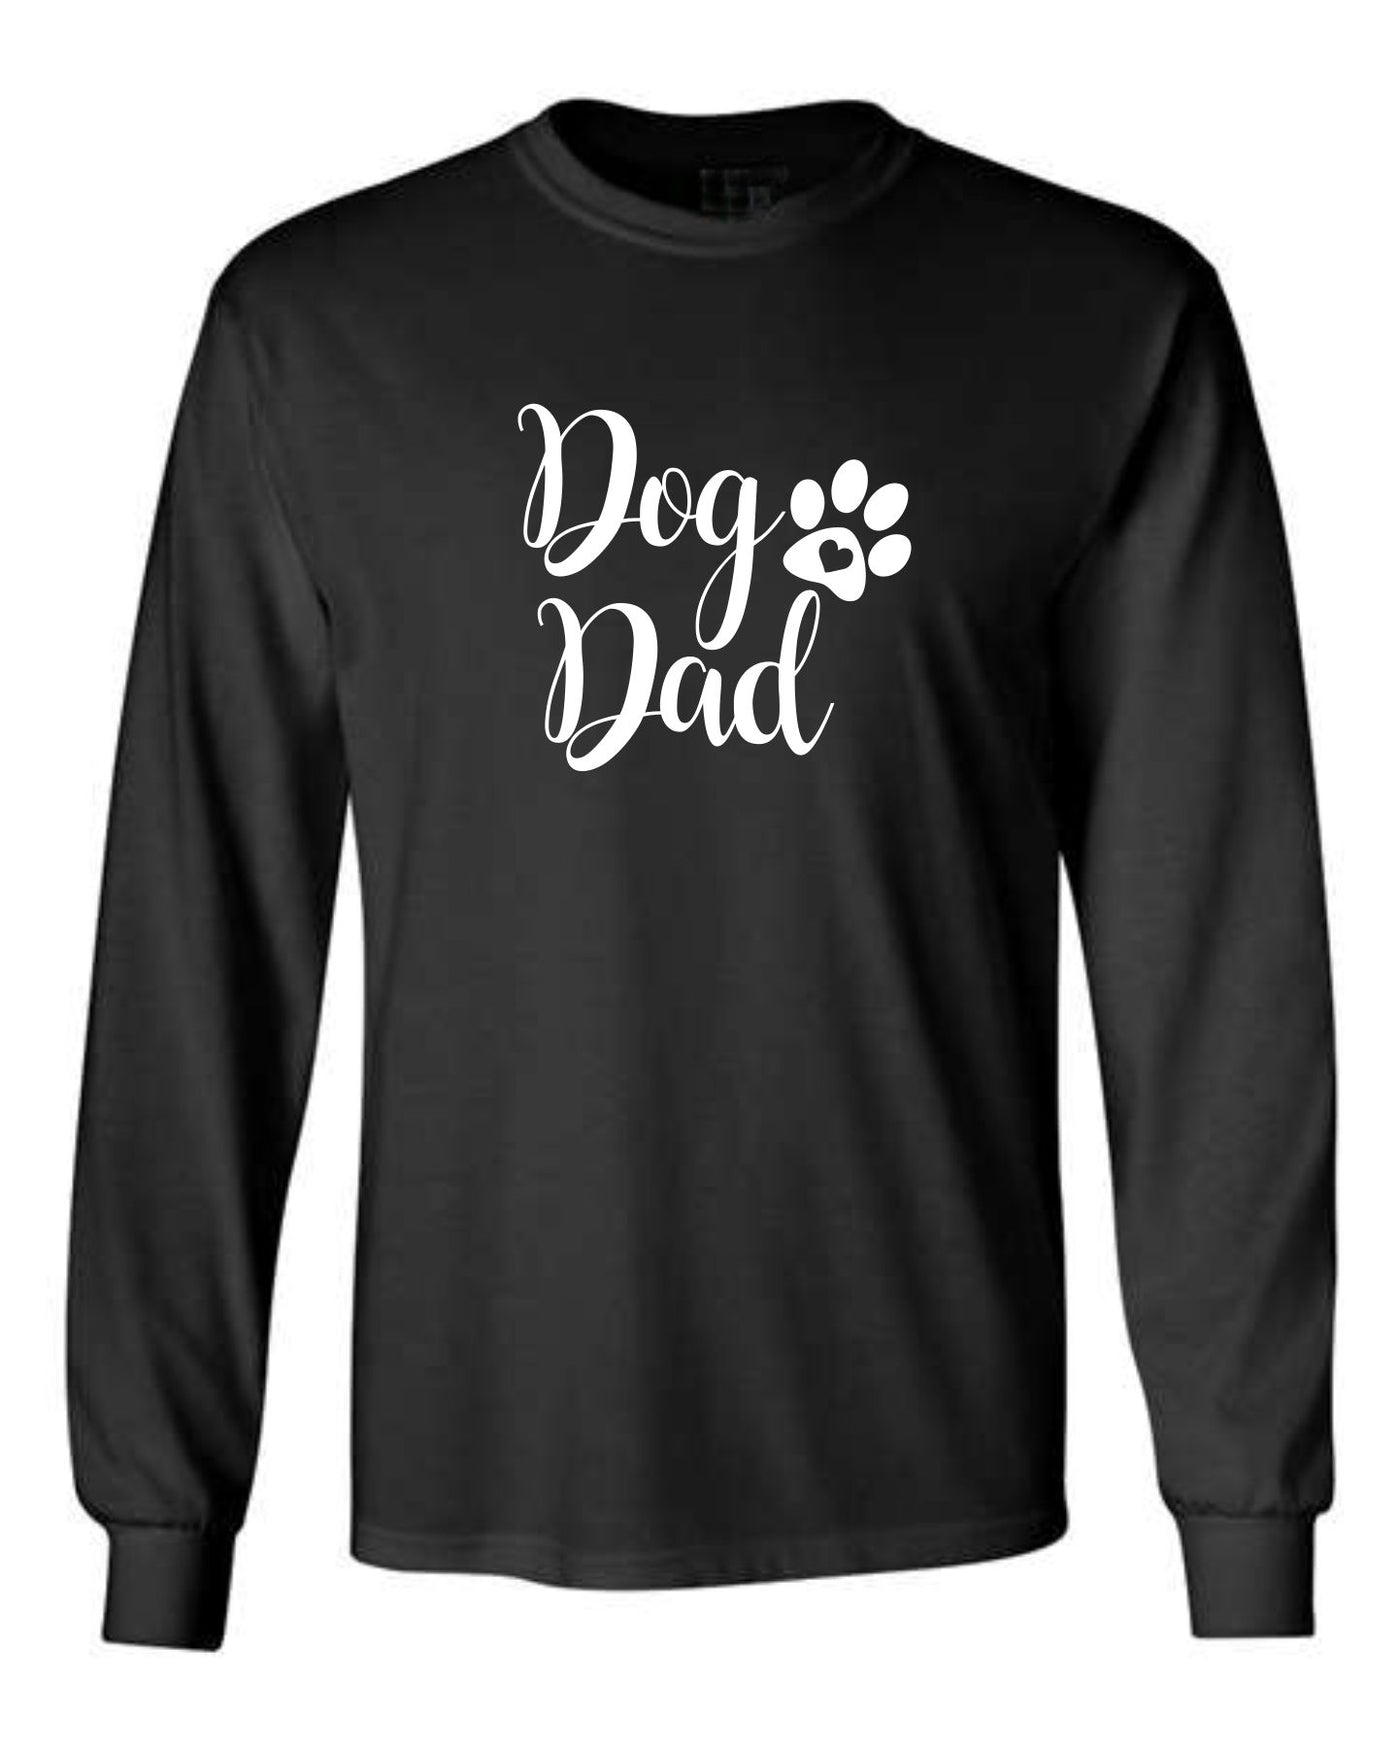 "Dog Dad" Unisex Long Sleeve Shirt